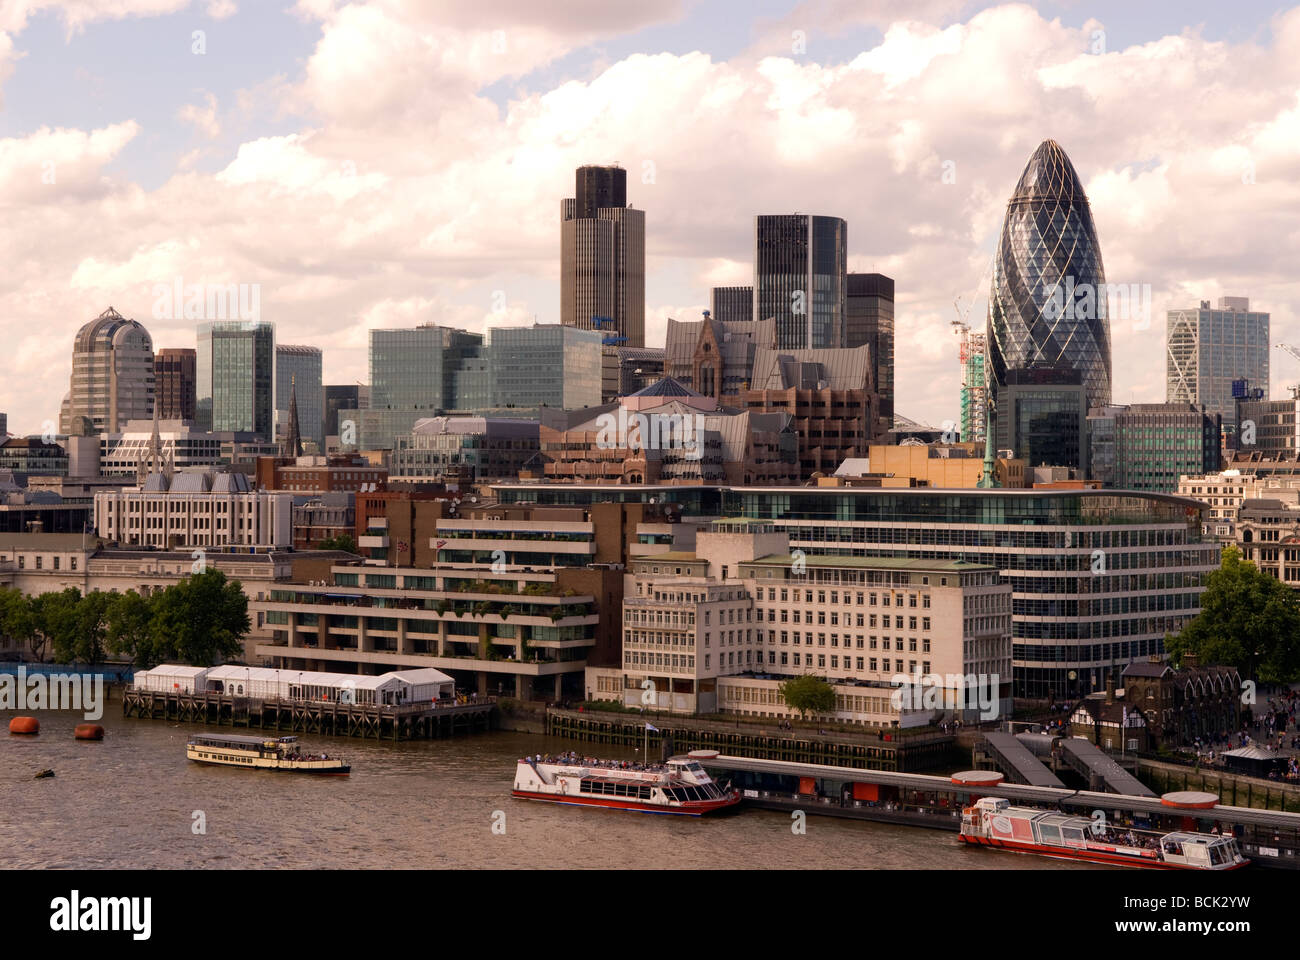 City of London zeigt eine Reihe von Unternehmen und Finanzinstitutionen, darunter das berühmte Gherkin Building, London, UK. Stockfoto